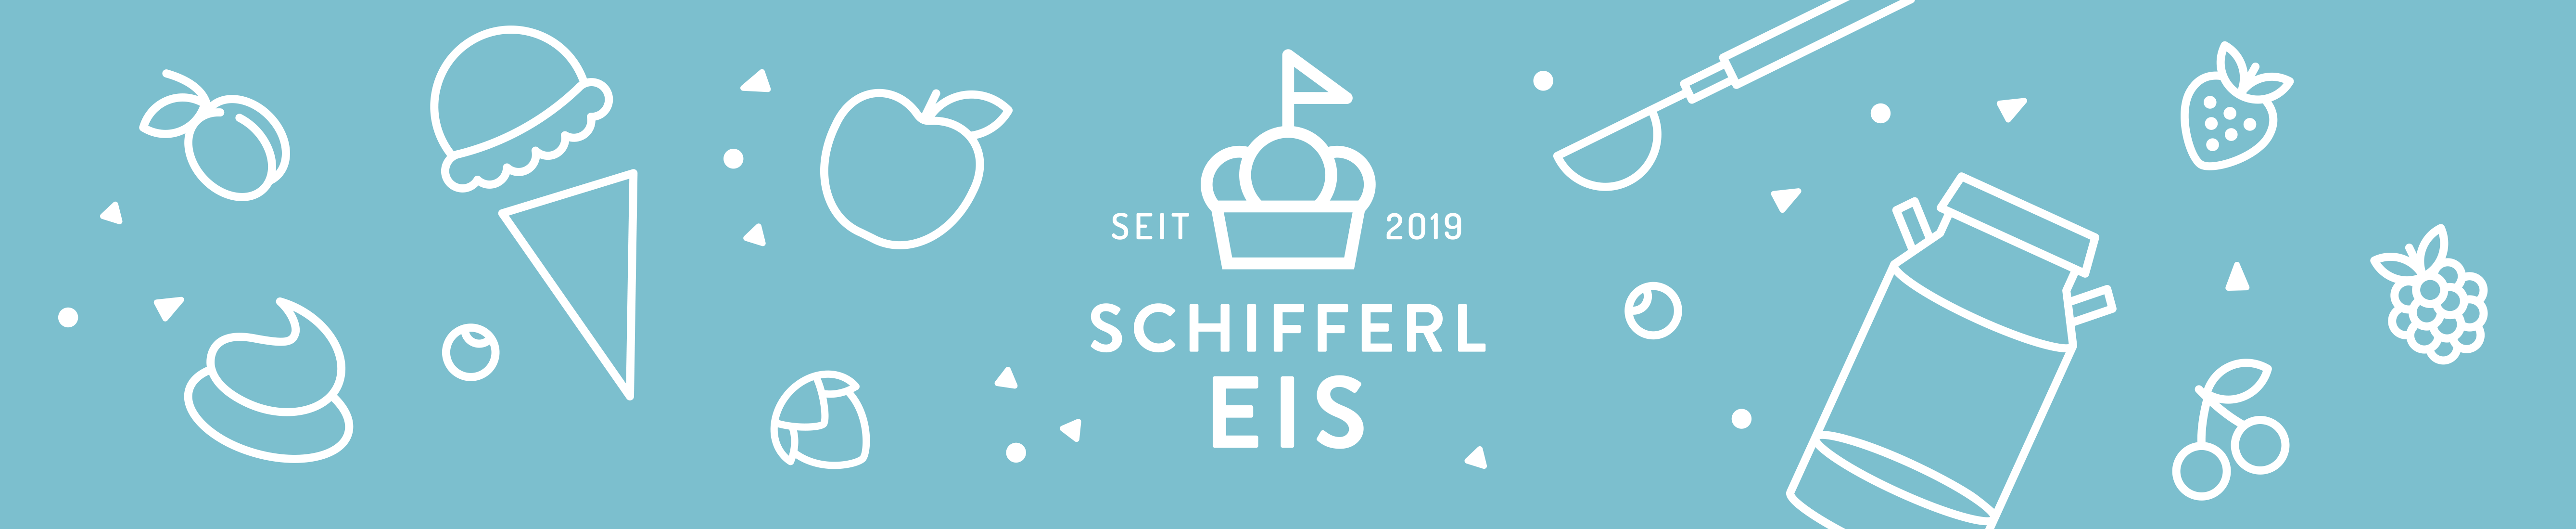 schifferl-eis-banner